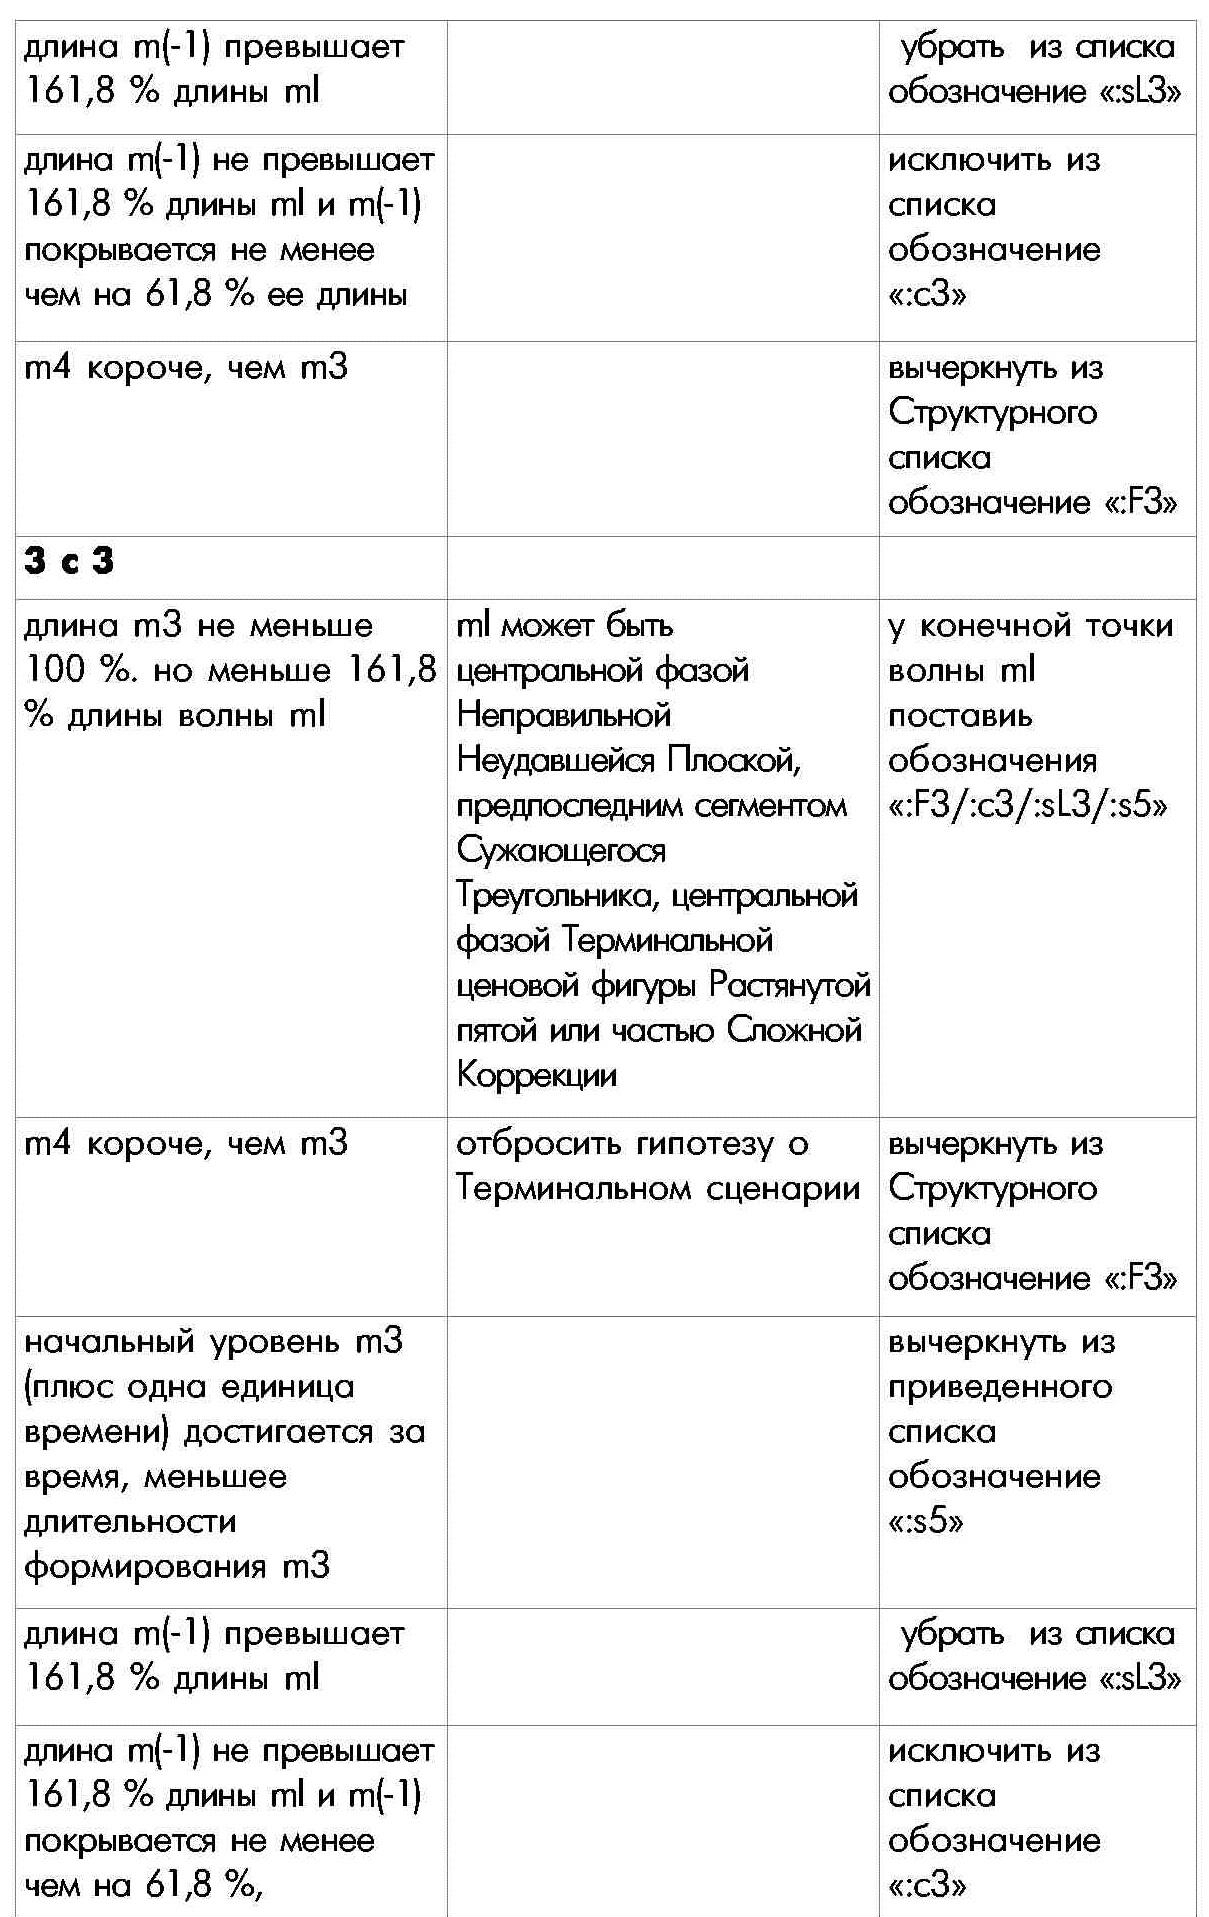 Правило П-3 определения внутренней структуры моноволны десятая часть таблицы